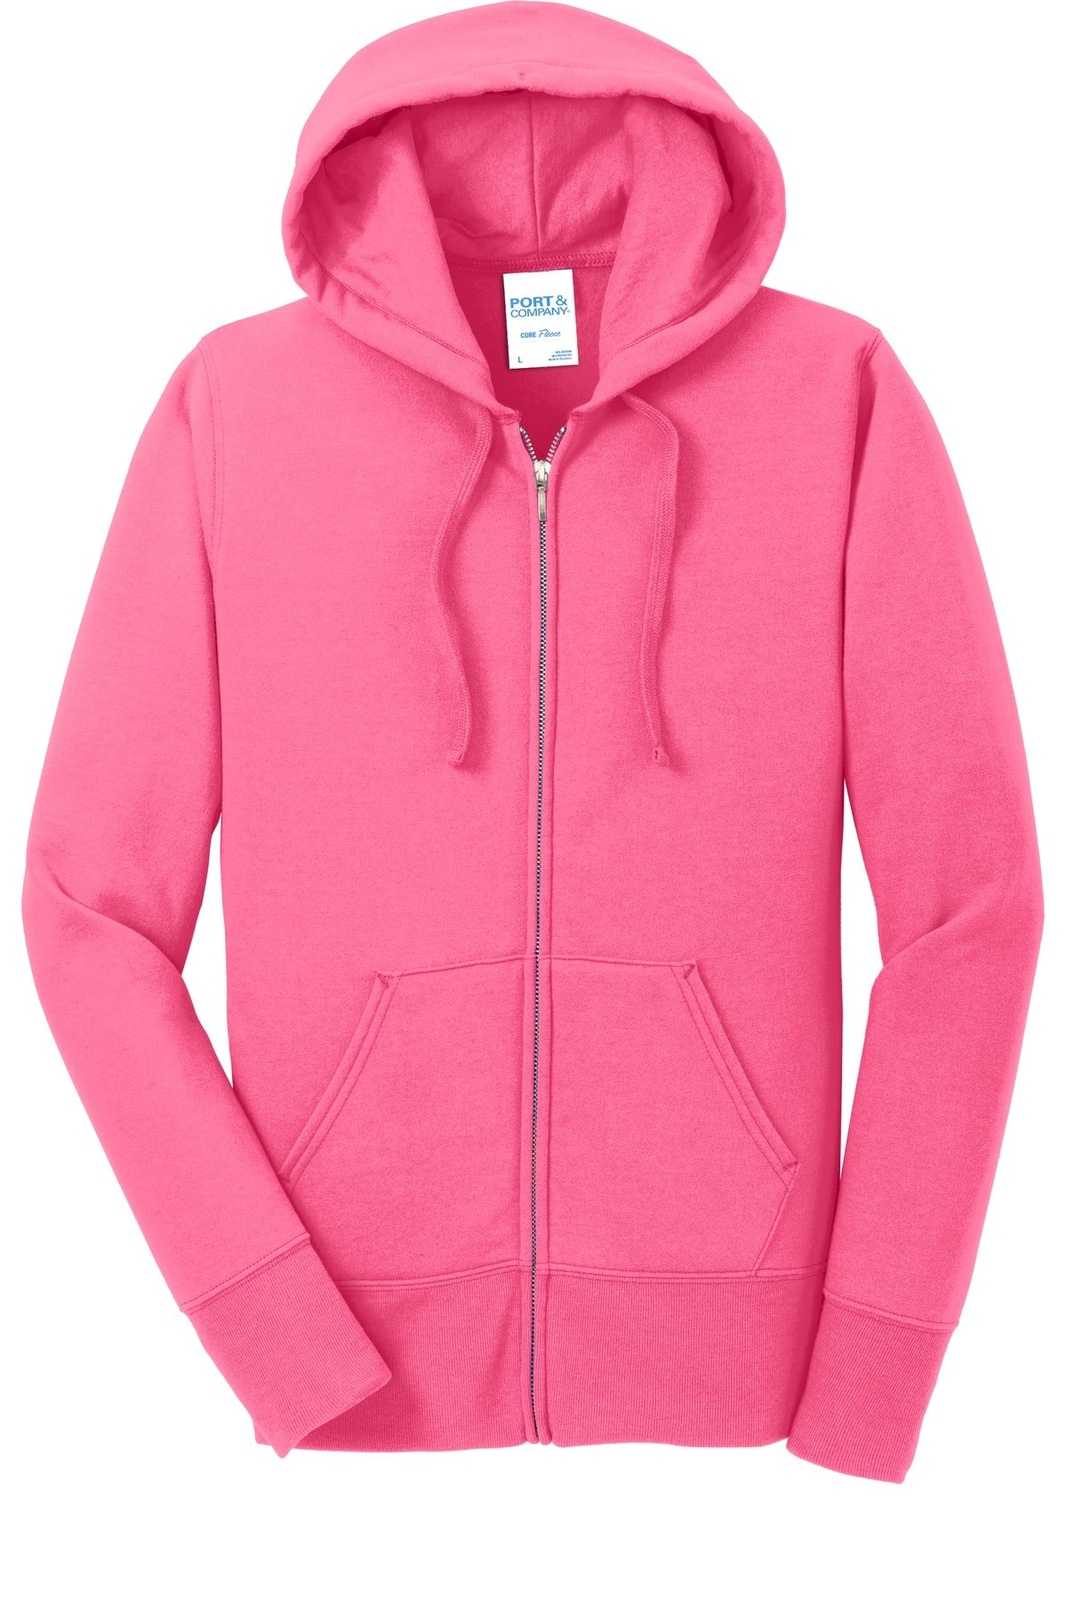 Port &amp; Company LPC78ZH Ladies Core Fleece Full-Zip Hooded Sweatshirt - Neon Pink - HIT a Double - 5